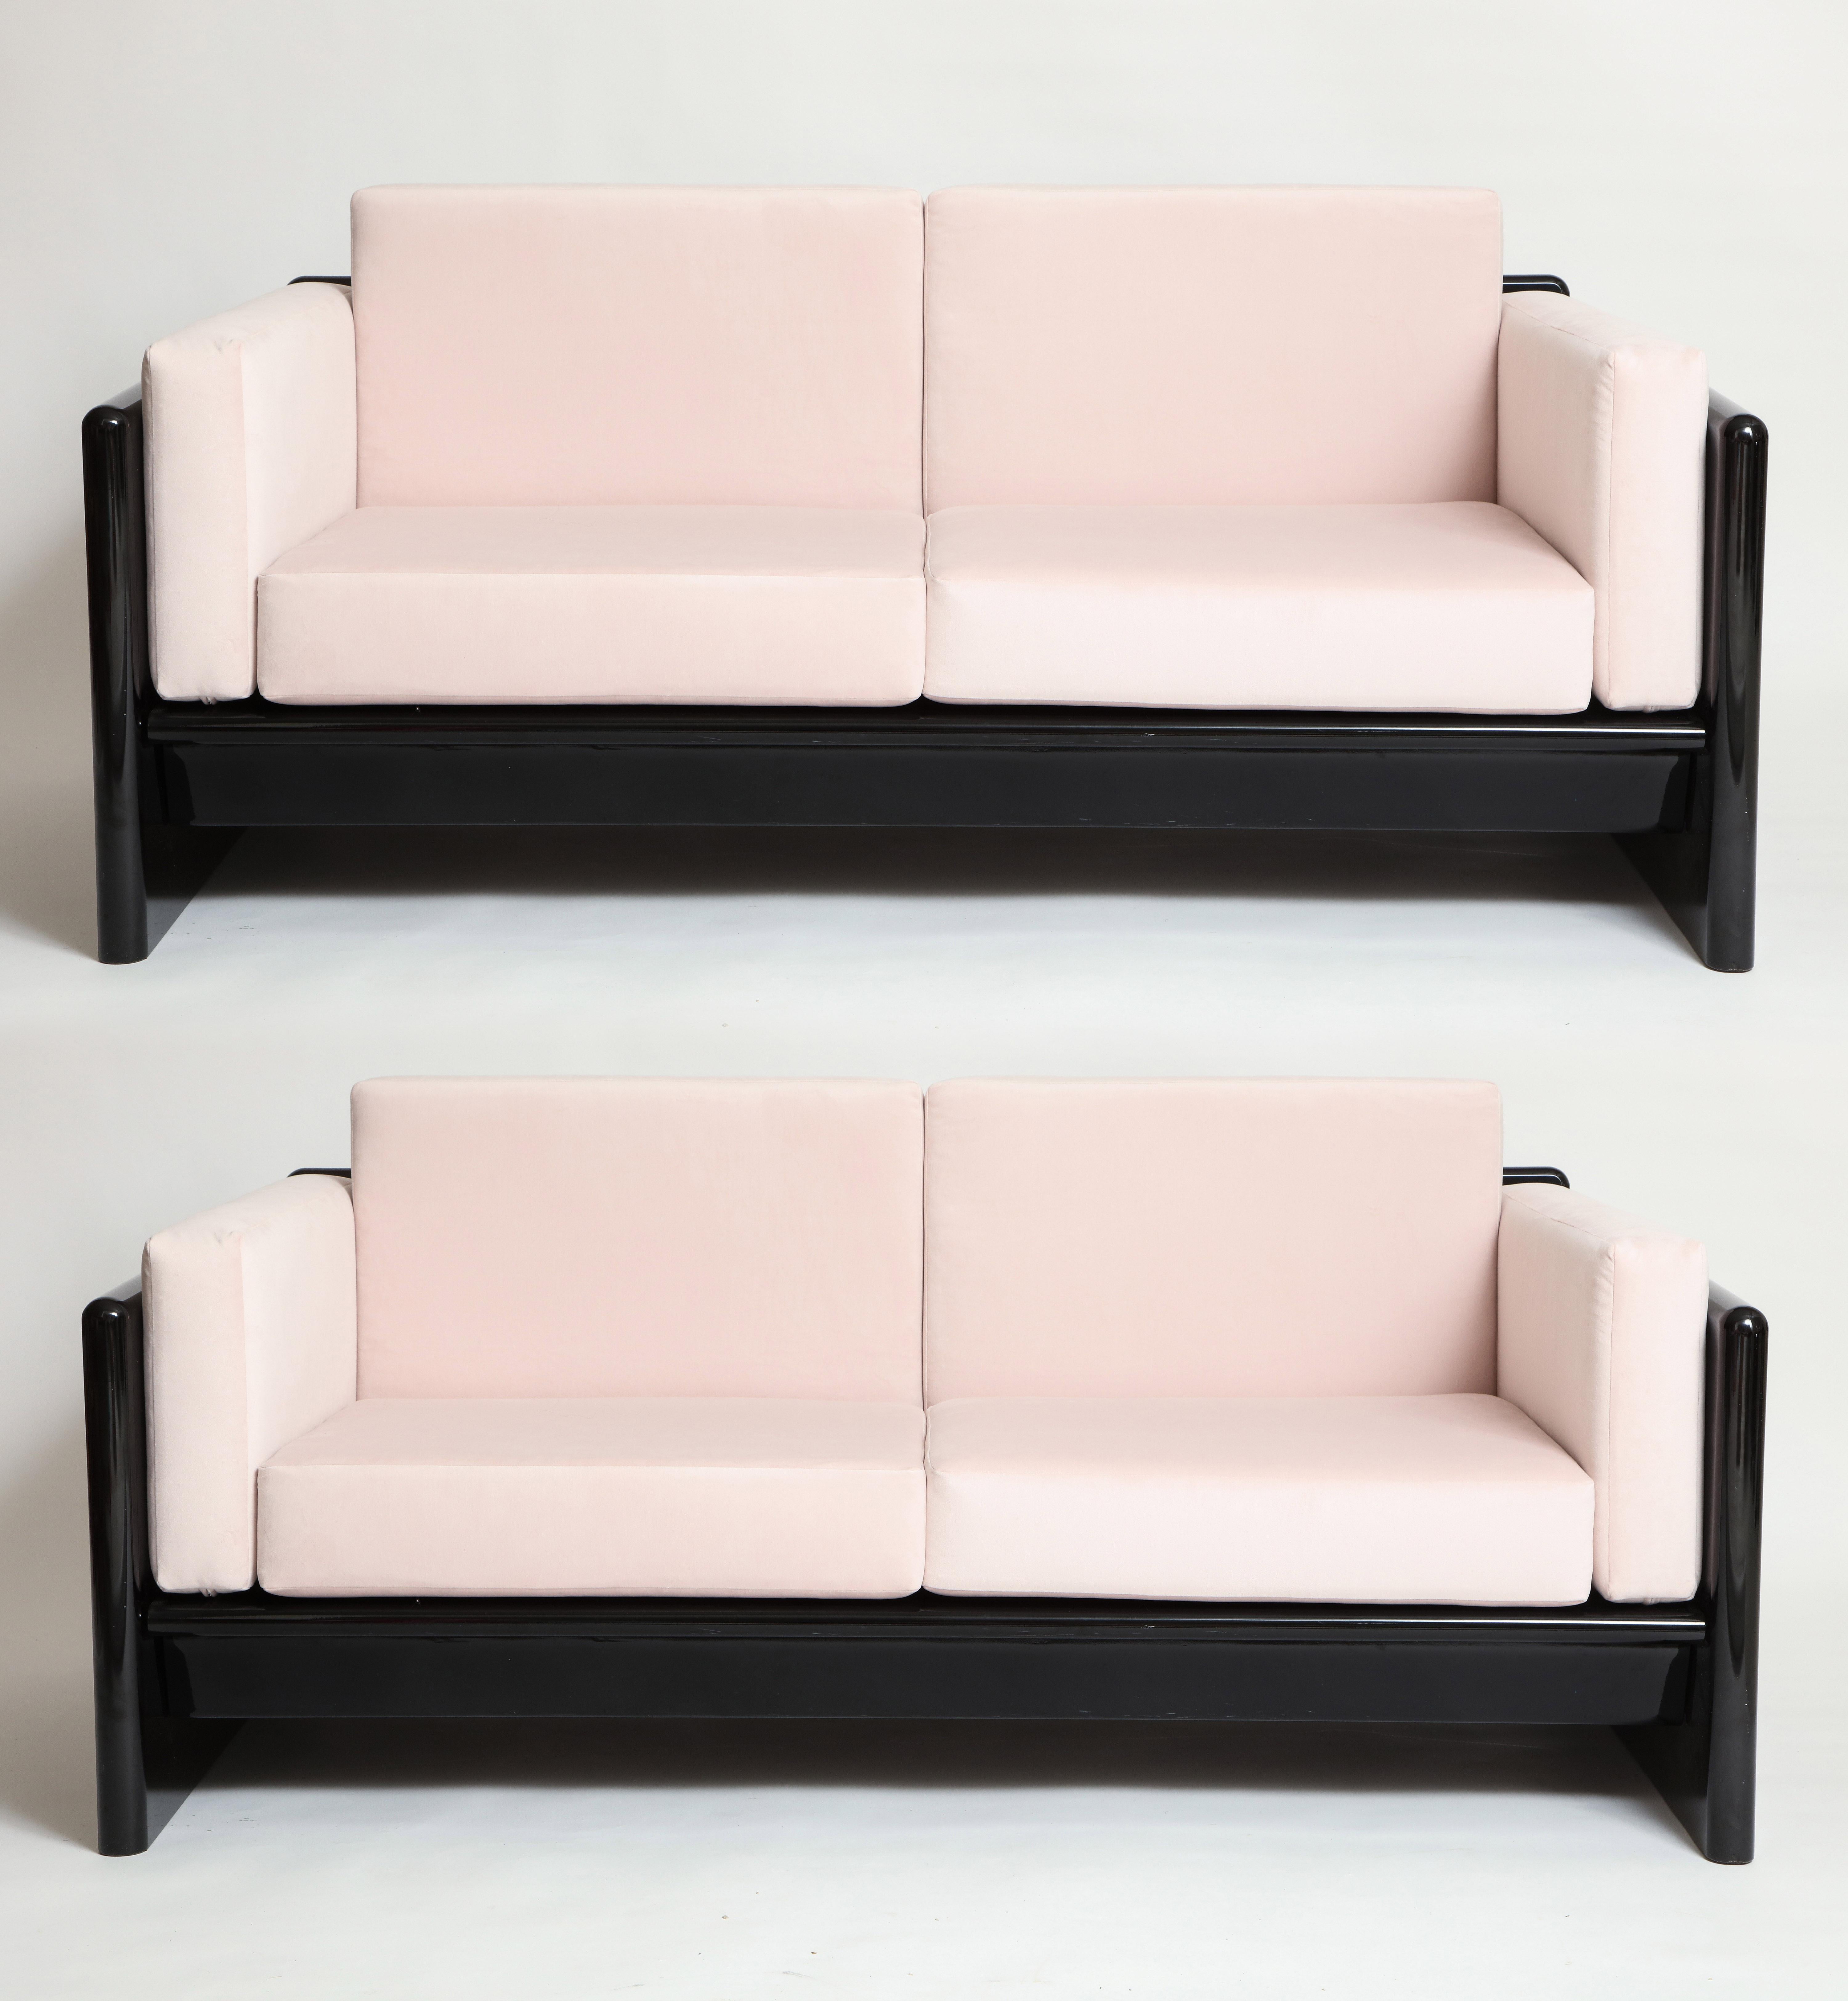 Sofá Simon Gavina lacado negro sette terciopelo rosa, Italia, años 70

Precioso sofá/sillón chic negro y rosa recién tapizado en tela rosa claro.
El negro es madera maciza recubierta de laca negra. Es una pieza sólida y pesada.
El precio es por